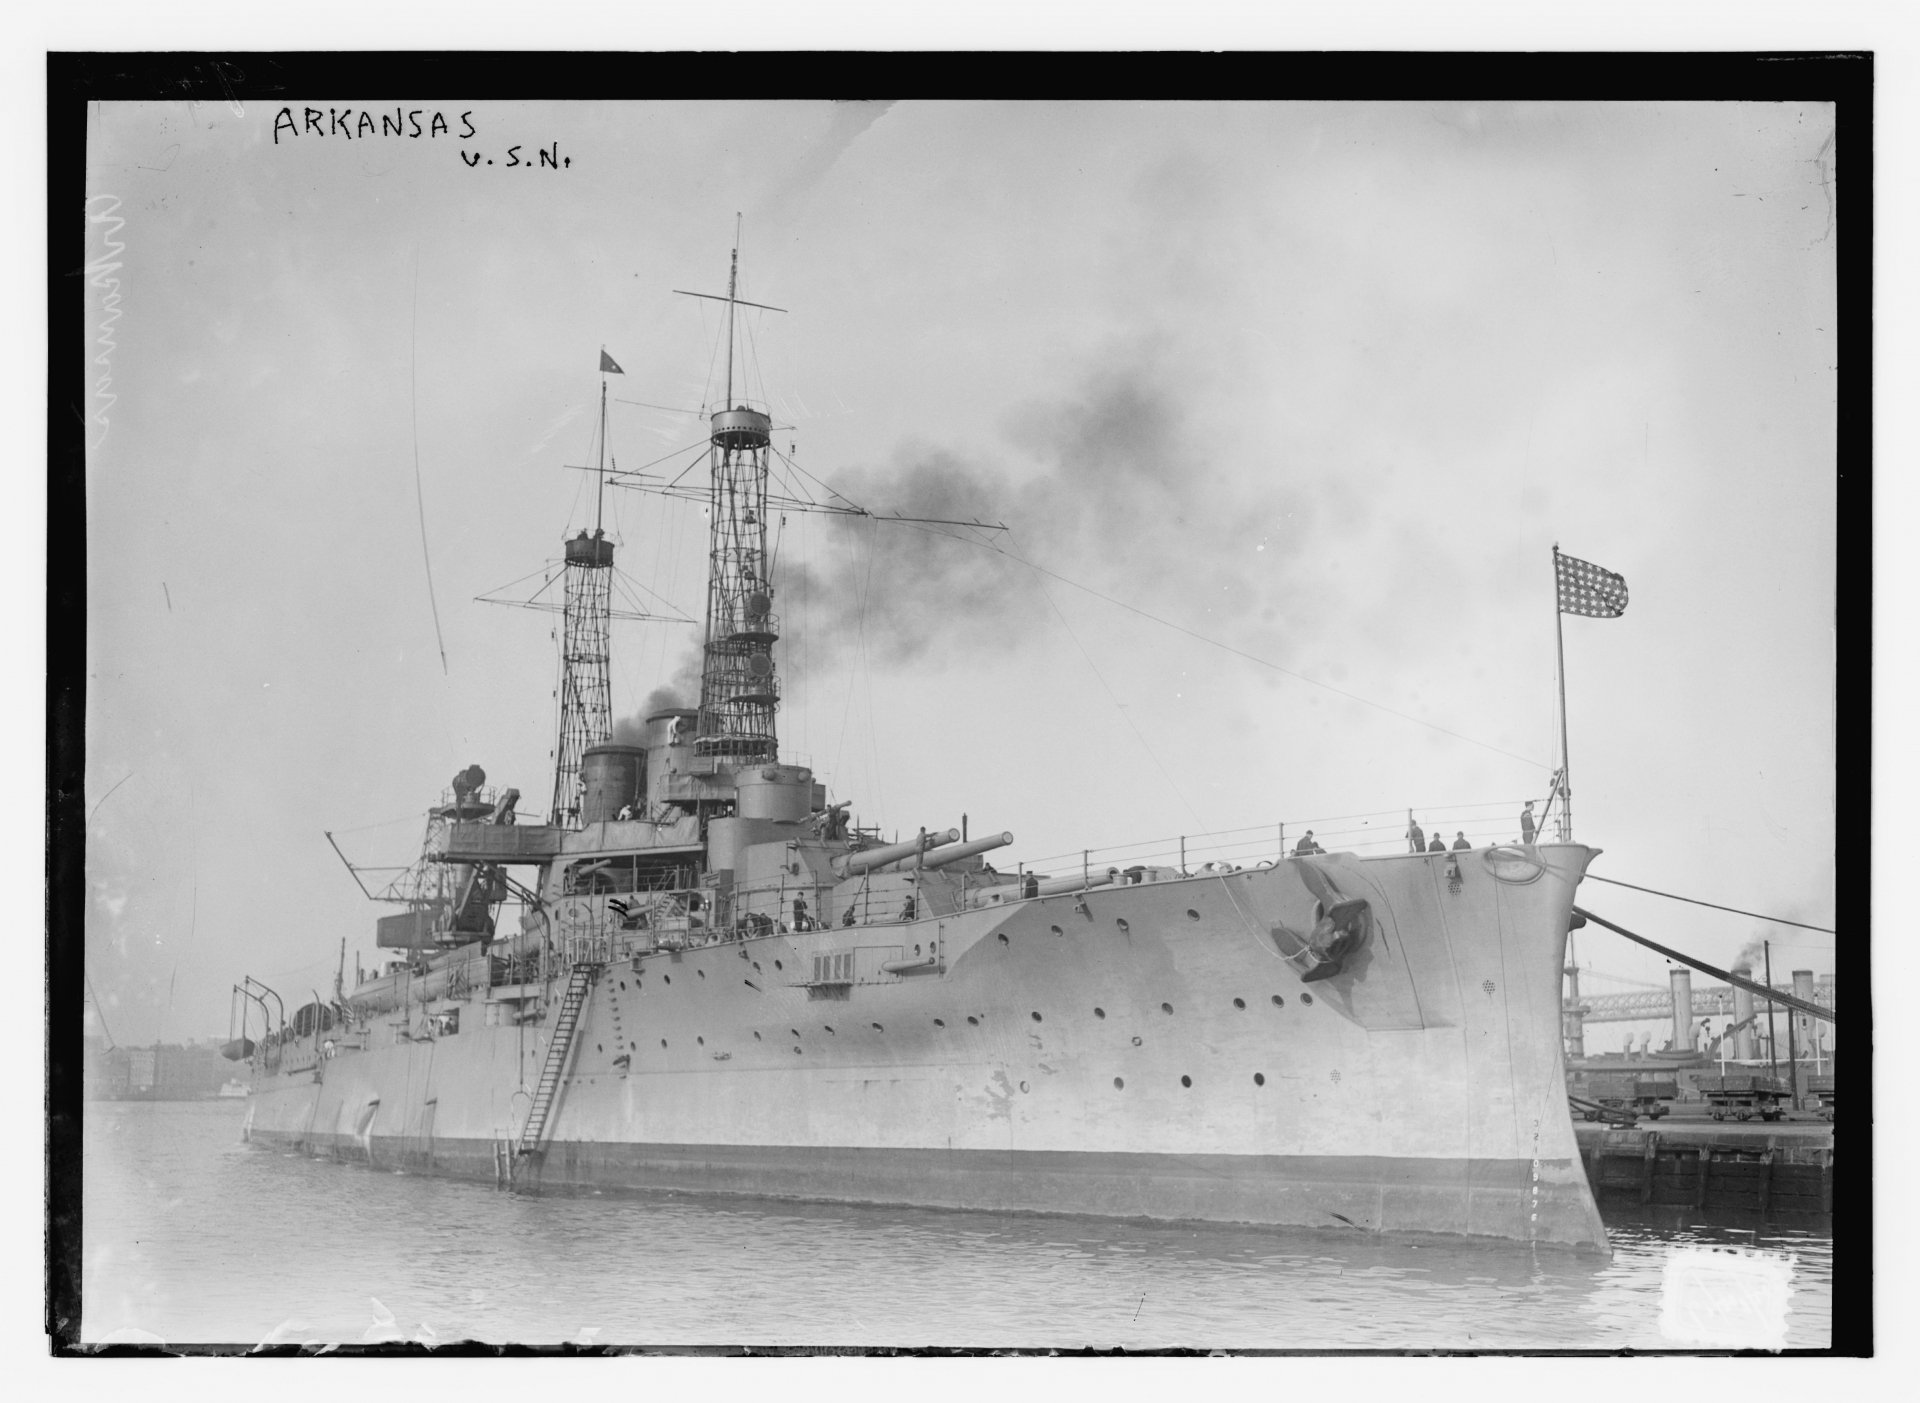 Arkansas uss USS ARKANSAS